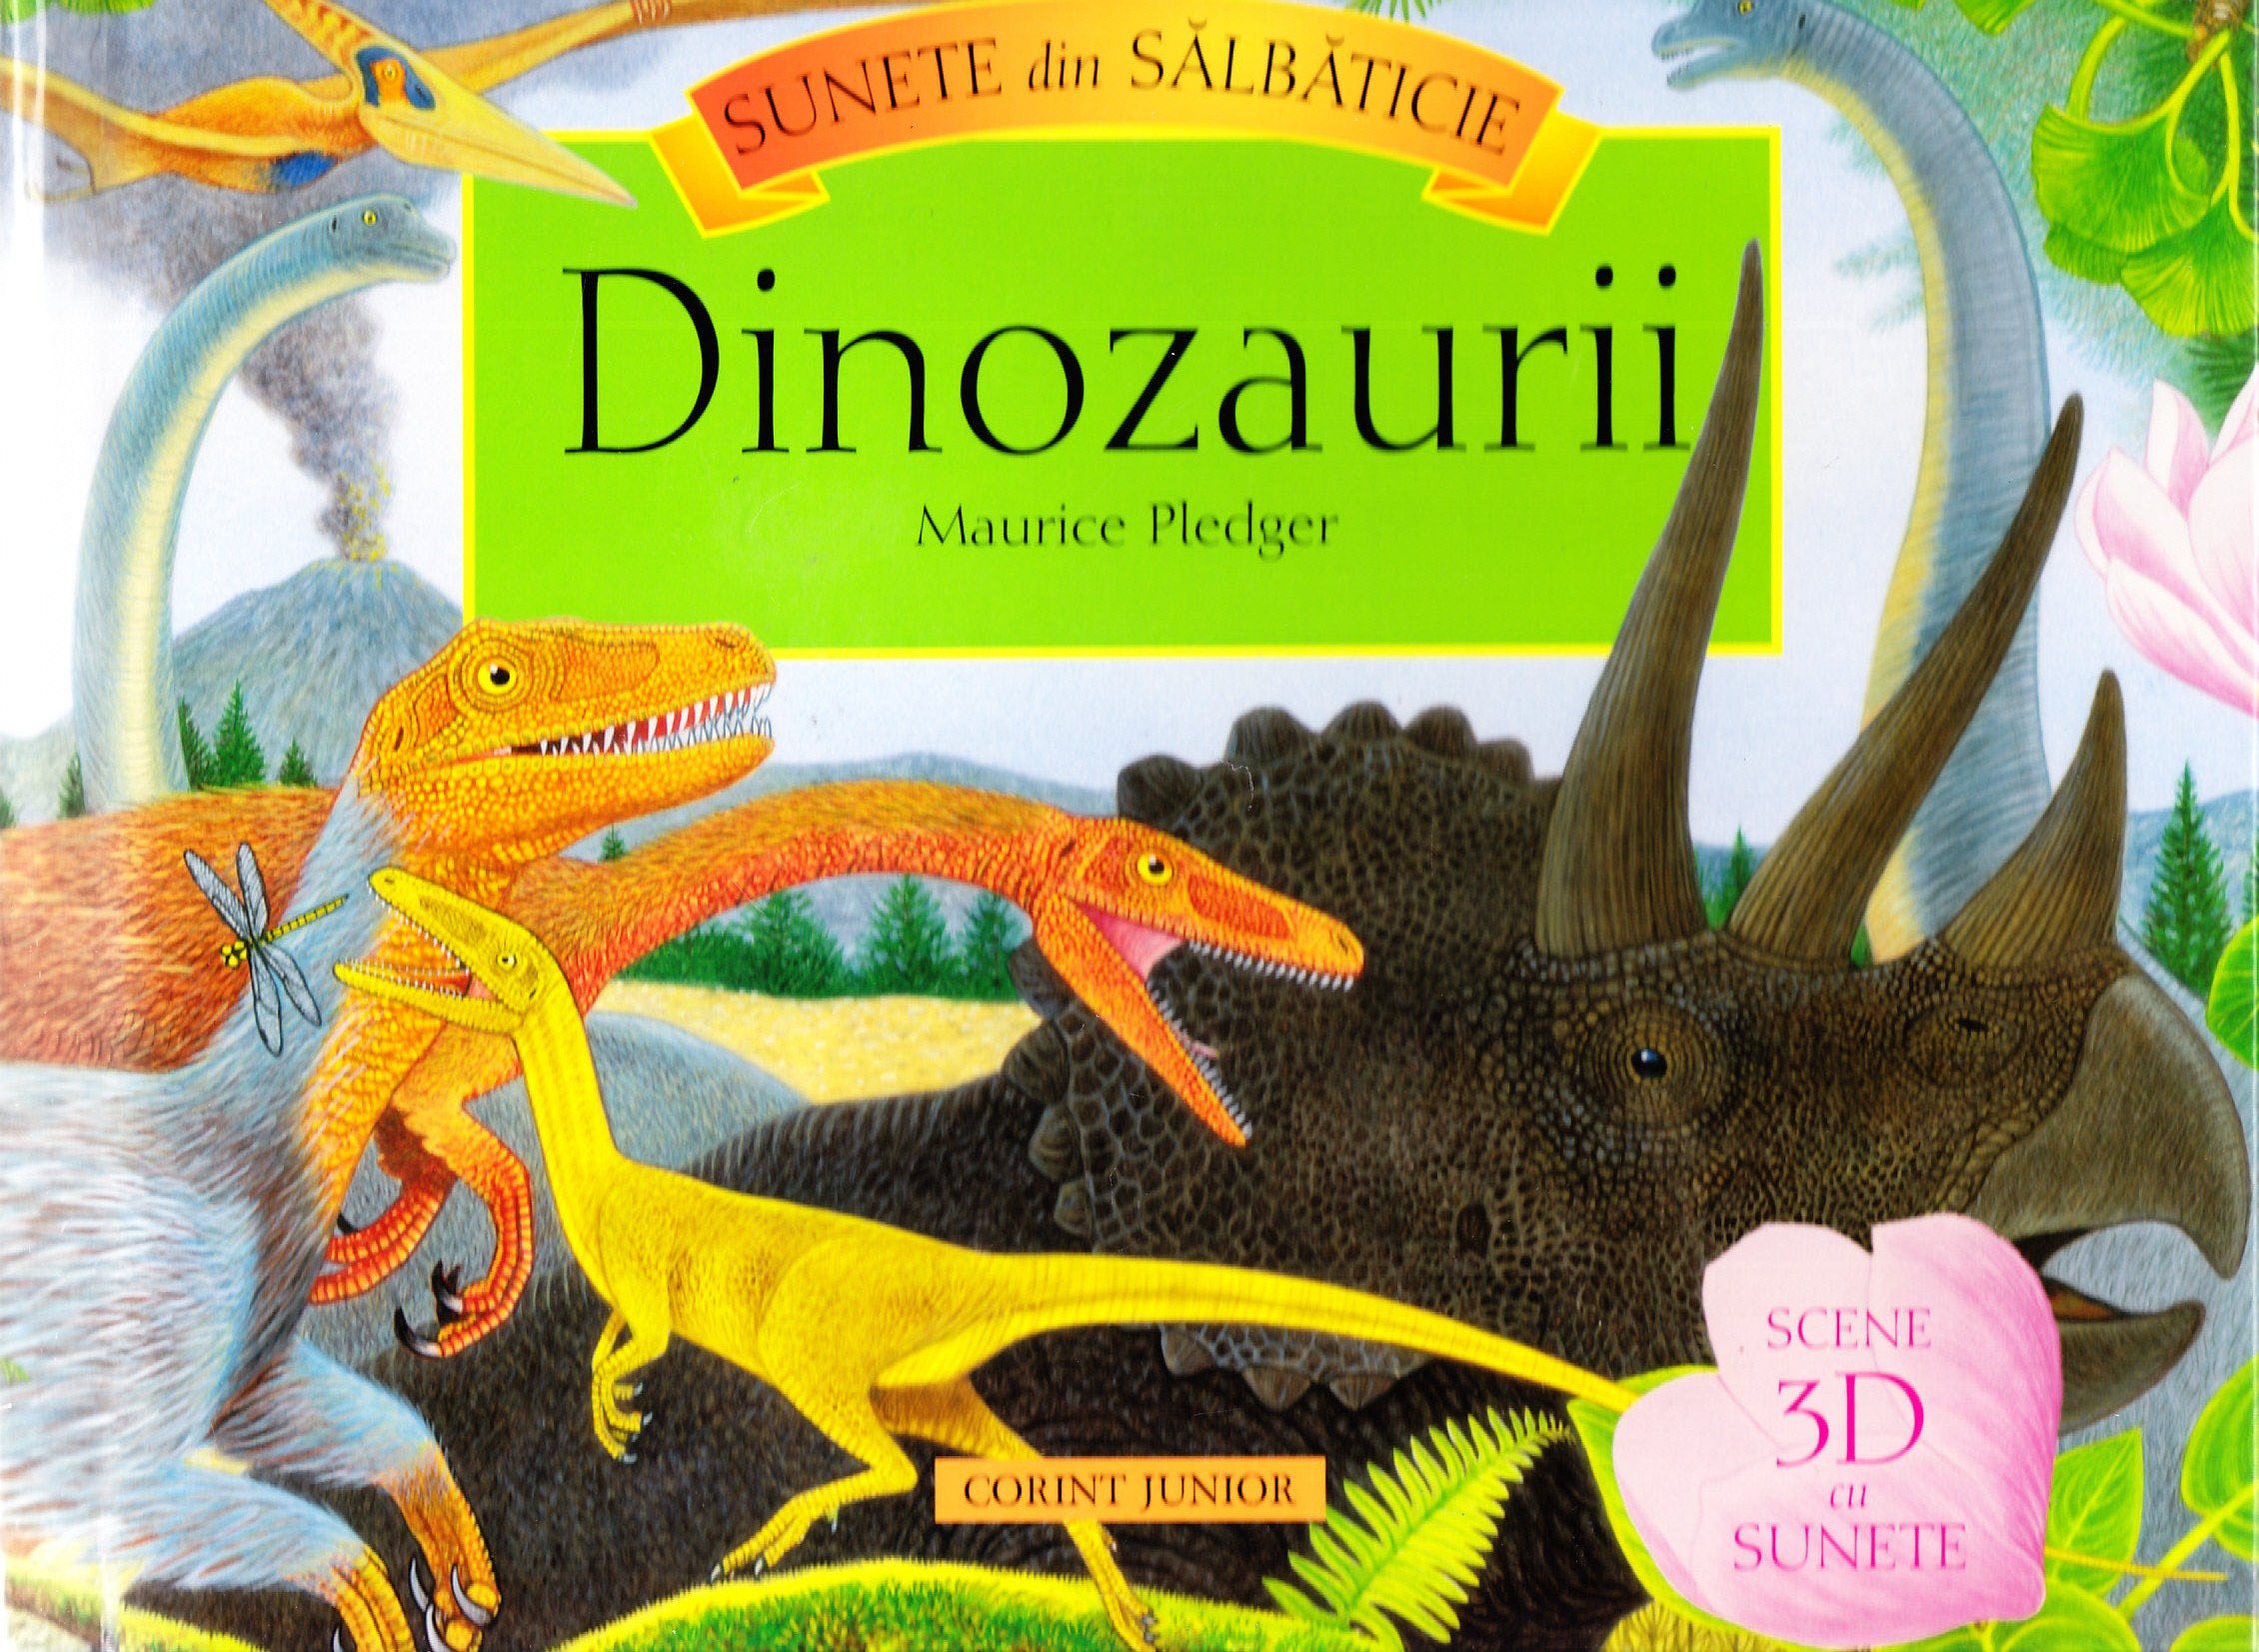 Dinozaurii - Scene 3D cu Sunete - Maurice Pledger